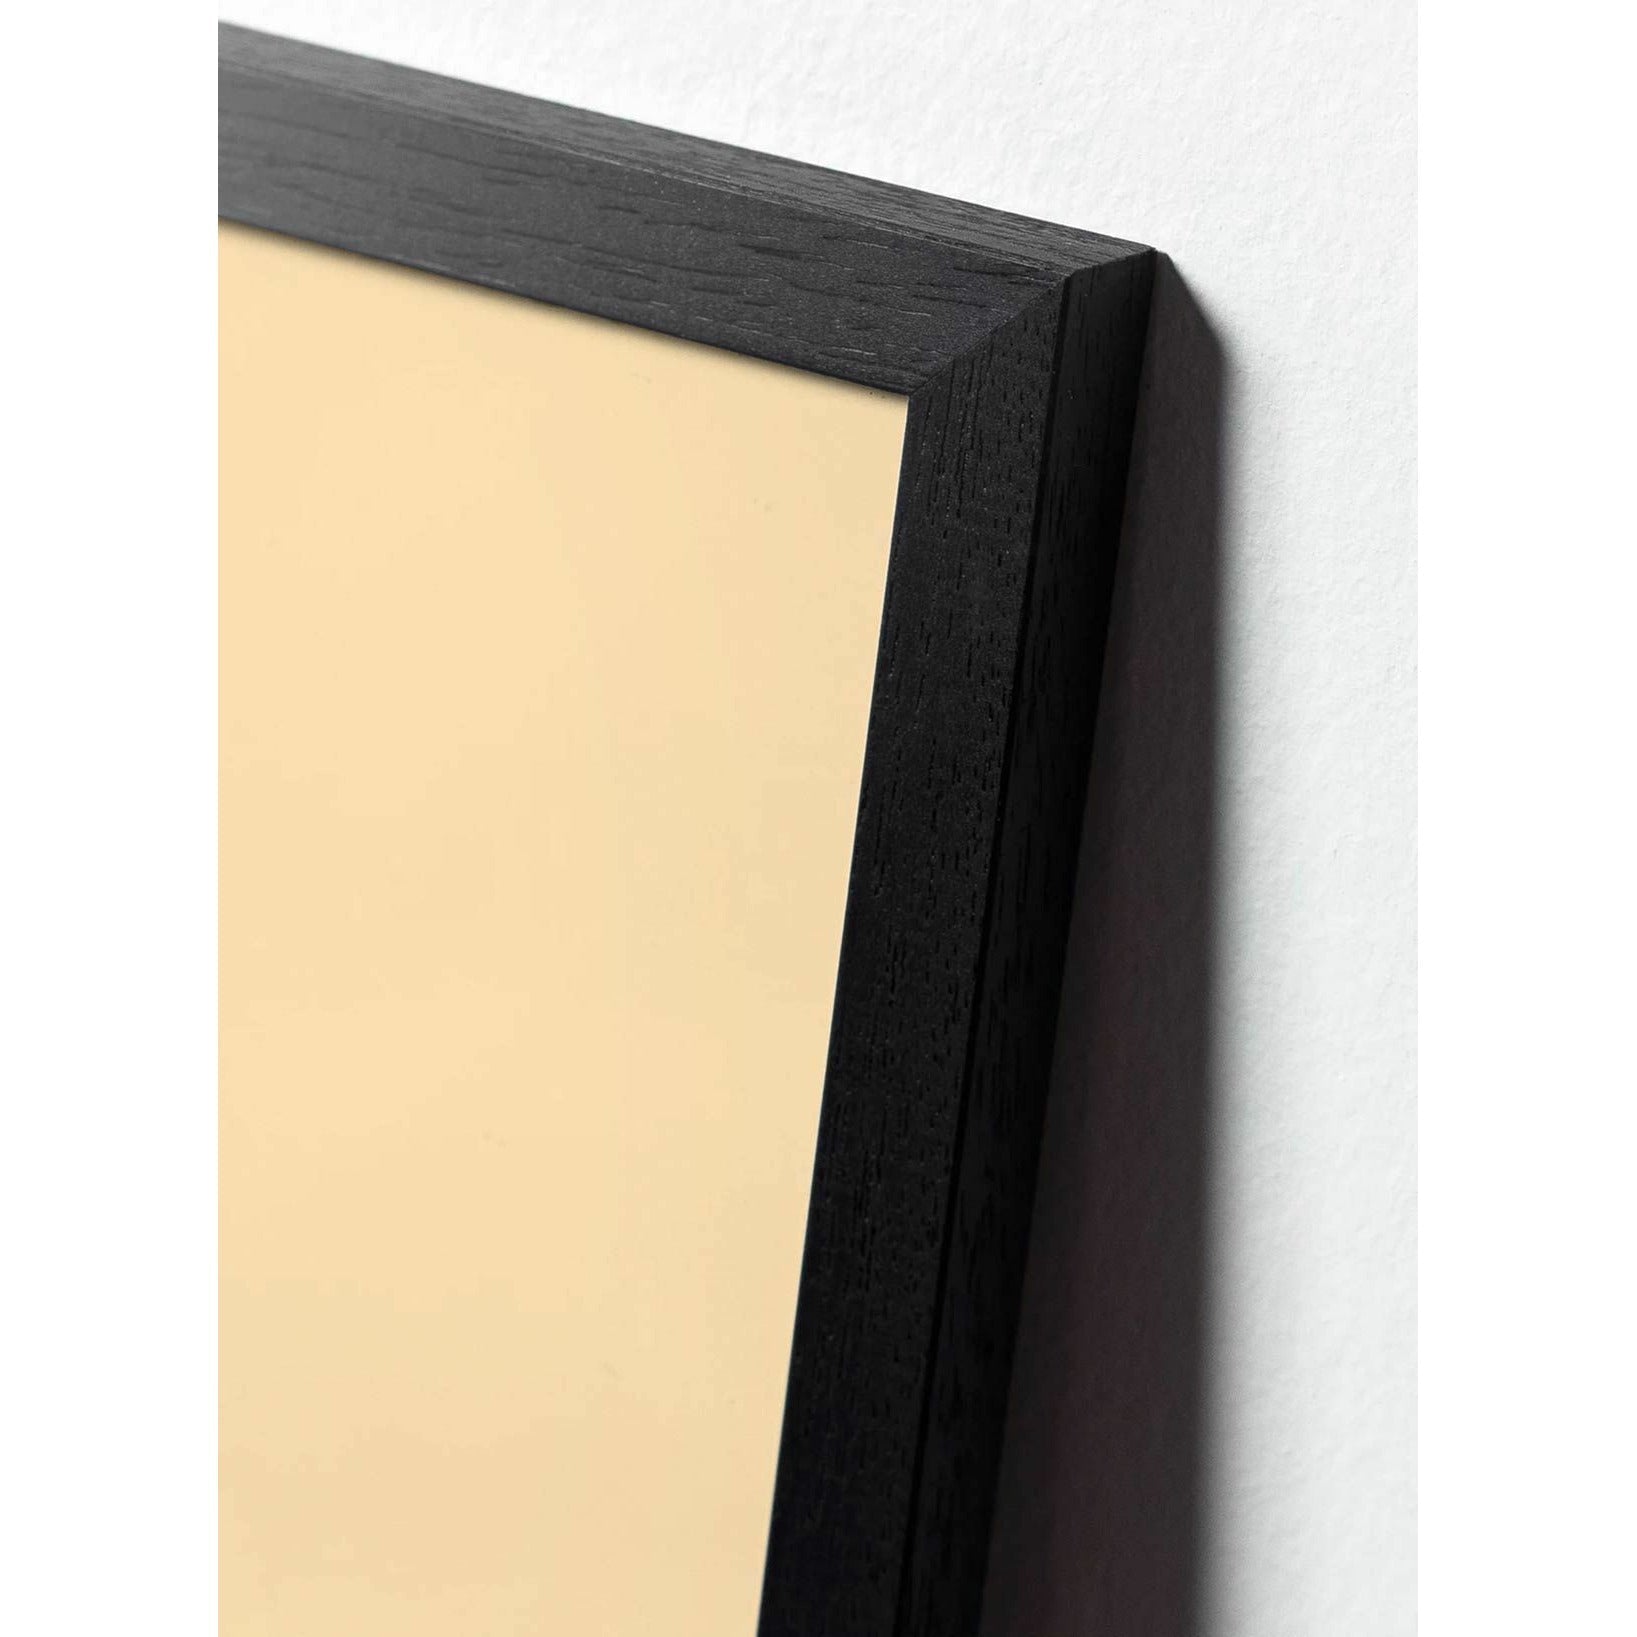 Plakát linky borovice kužele, rám v černém lakovaném dřevu 30x40 cm, bílé pozadí